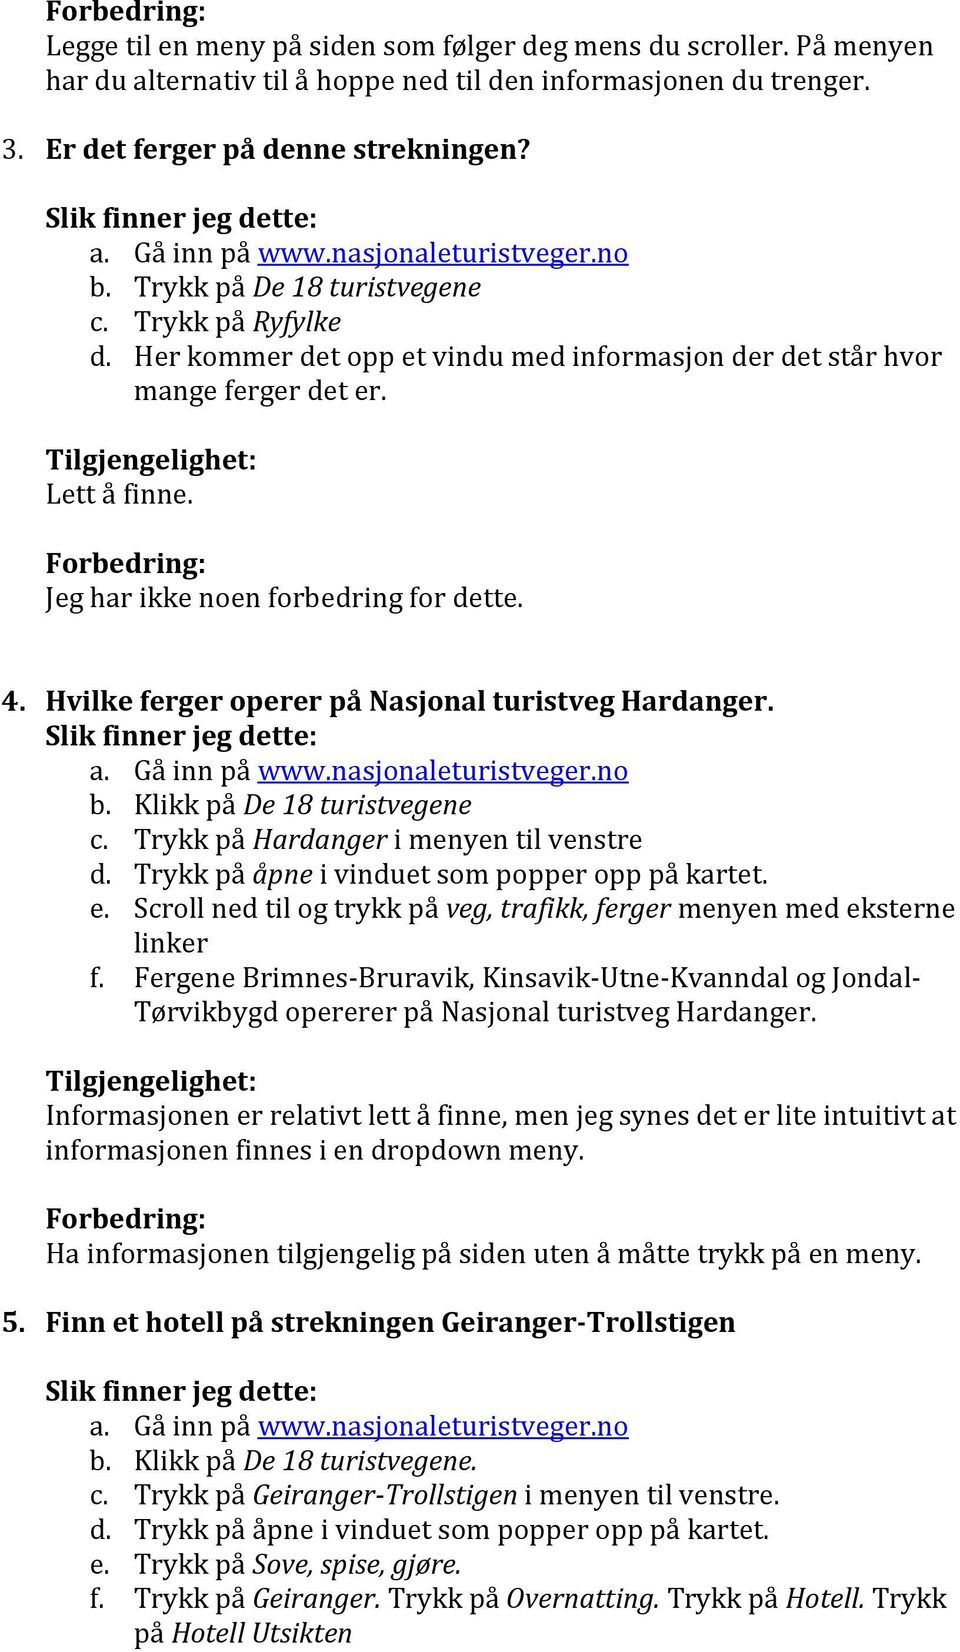 4. Hvilke ferger operer på Nasjonal turistveg Hardanger. b. Klikk på De 18 turistvegene c. Trykk på Hardanger i menyen til venstre d. Trykk på åpne i vinduet som popper opp på kartet. e.